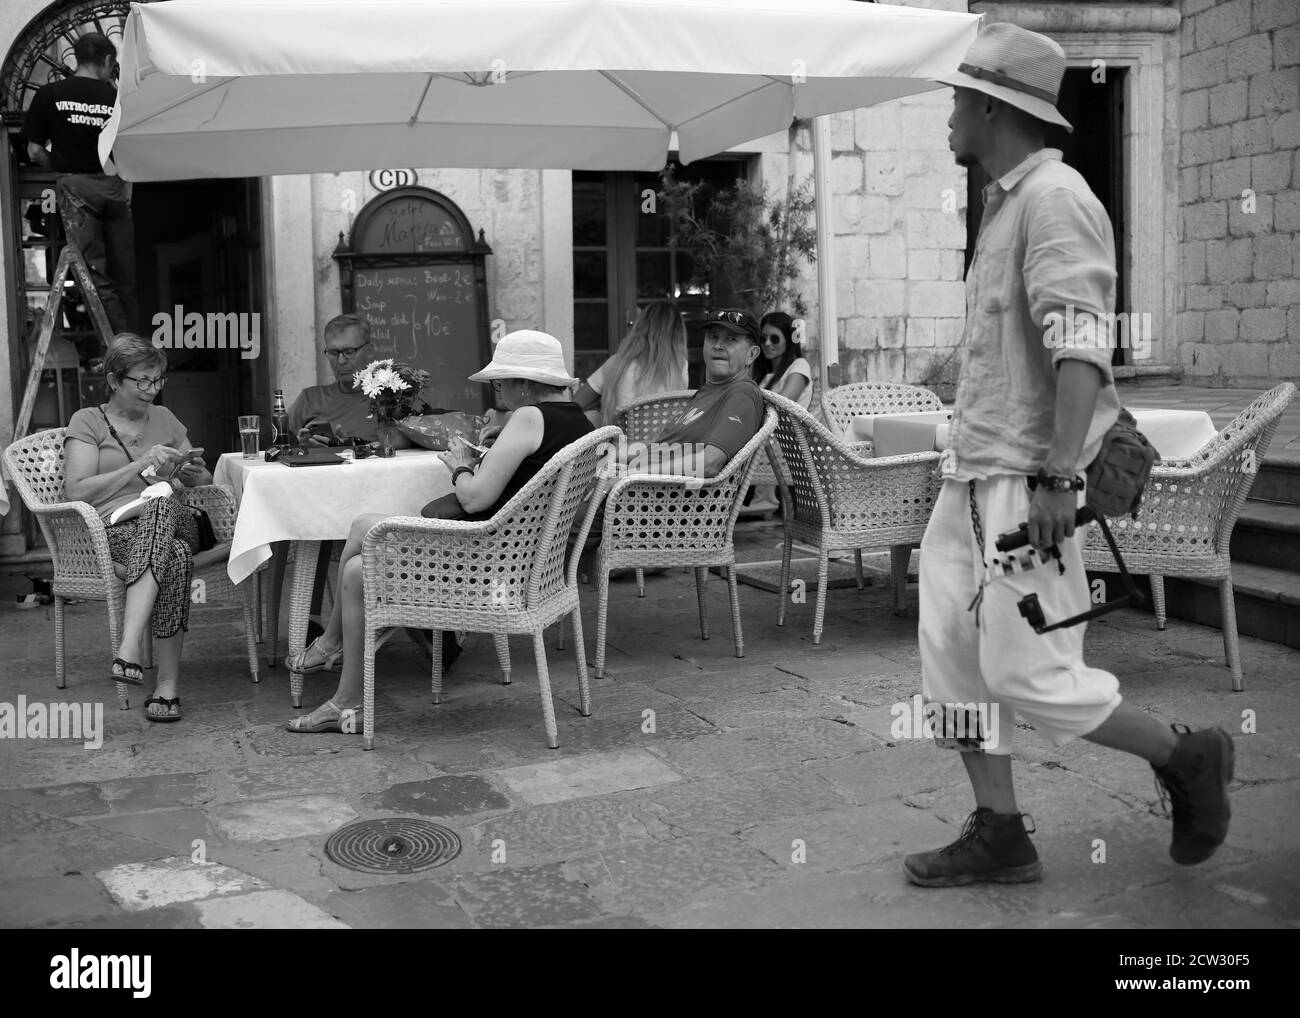 Kotor, Montenegro, 22. Sep 2019: Ein sitzender Mann in einem Café sieht verärgert aus und sieht Passanten zu (s/w) Stockfoto